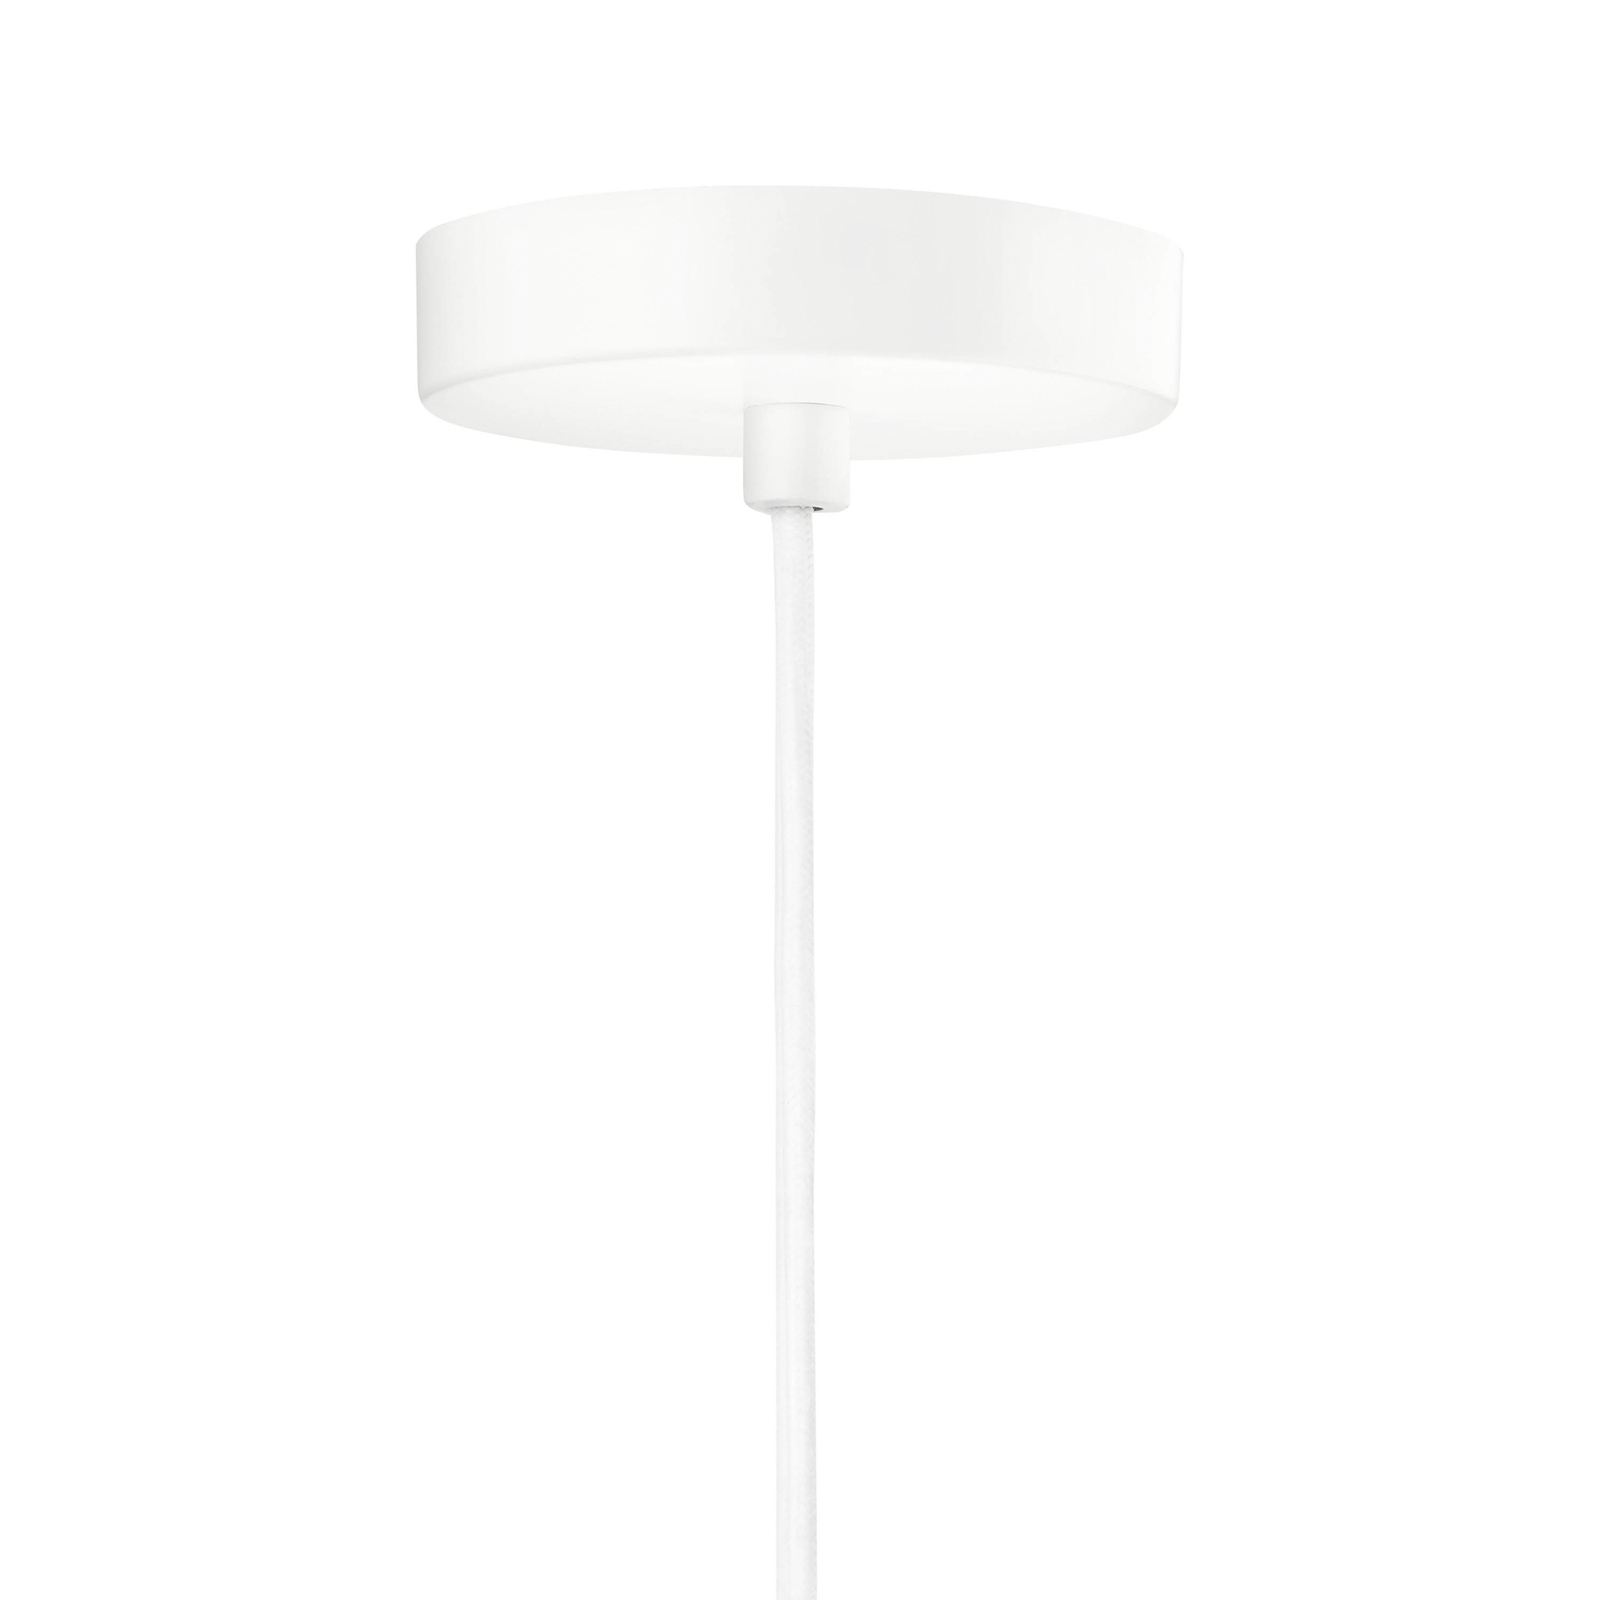 Shahin κρεμαστό φωτιστικό, Ø 23 cm, 3-φωτο, λευκό / διάφανο, γυαλί